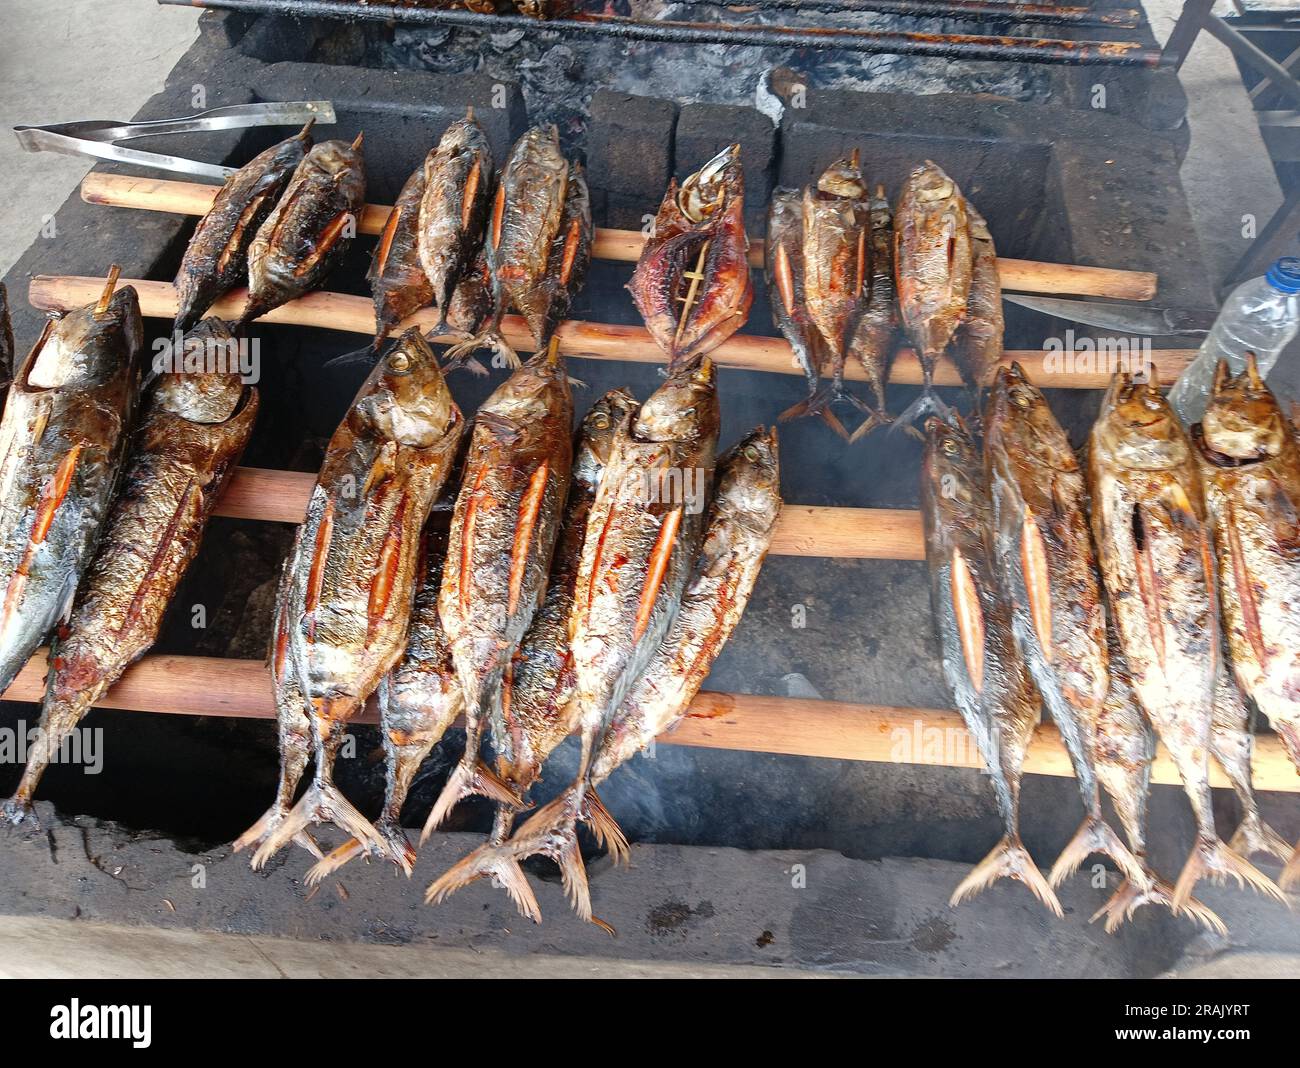 Fufu-Fische sind echter Bonito oder großer Thunfisch, der geräuchert wird. Der Rauch kommt von brennenden Kokosnussschalen, bis das Fleisch gekocht ist. Stockfoto